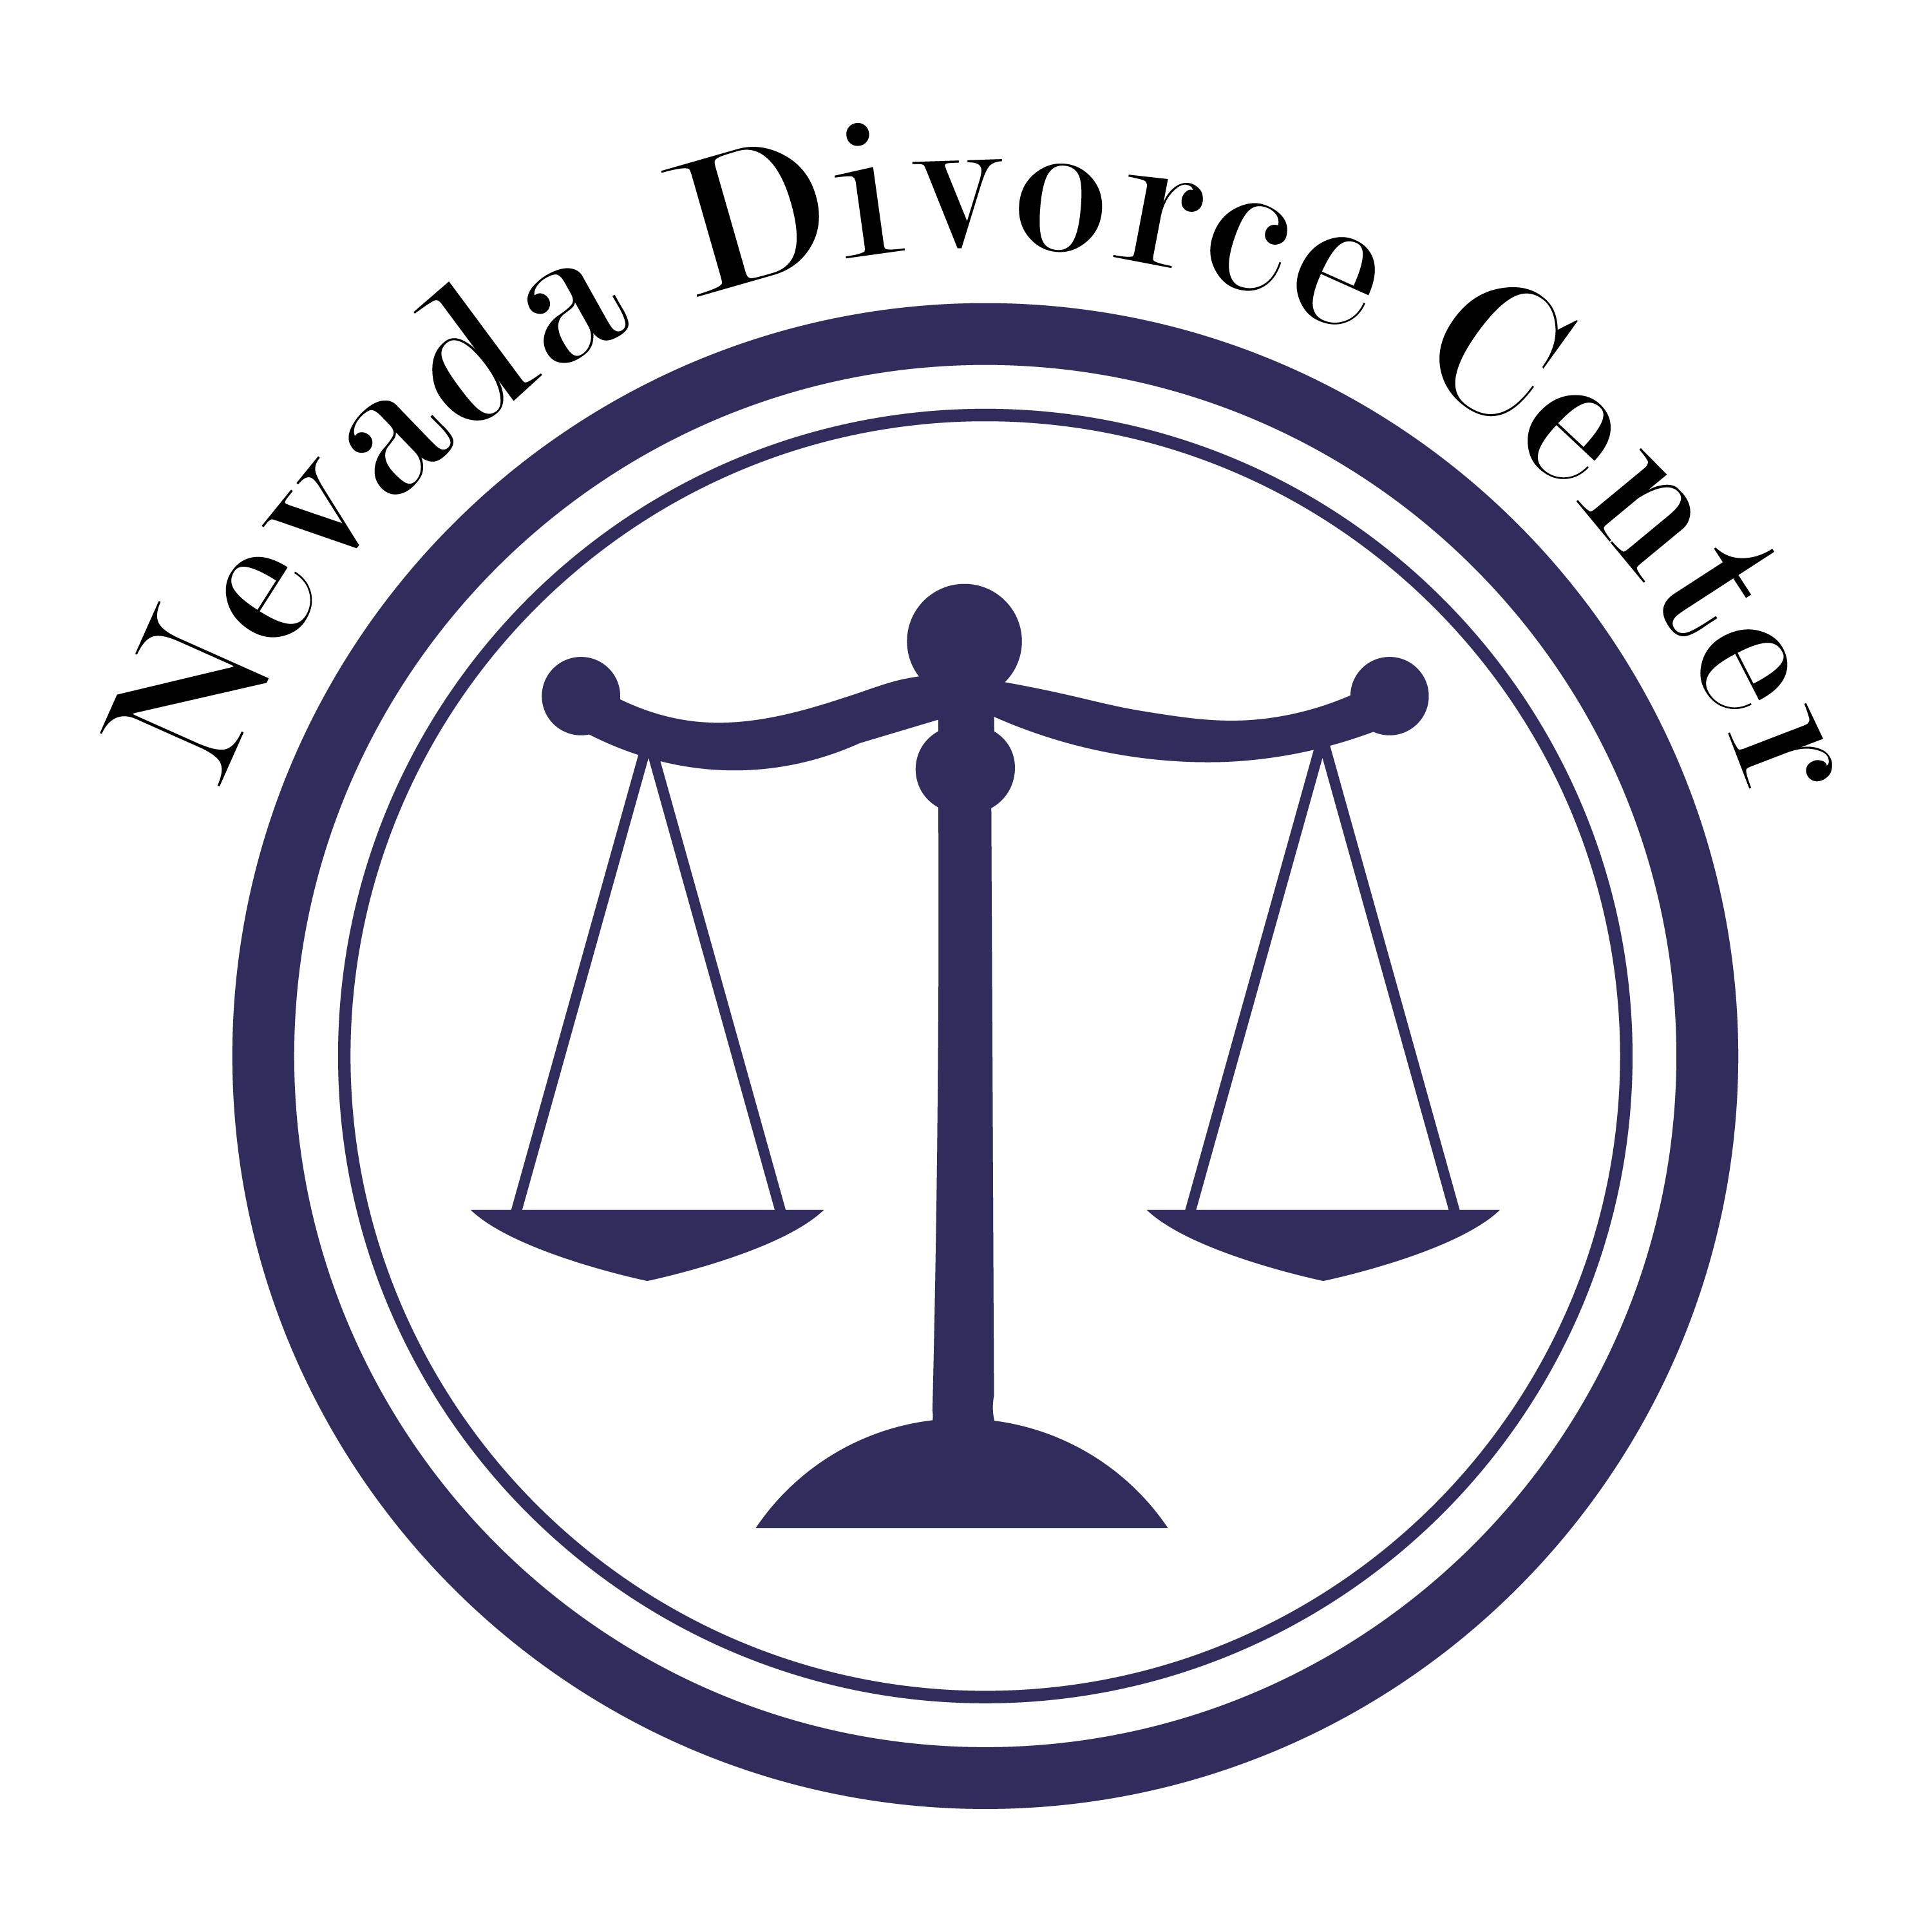 Nevada Divorce Center(2)